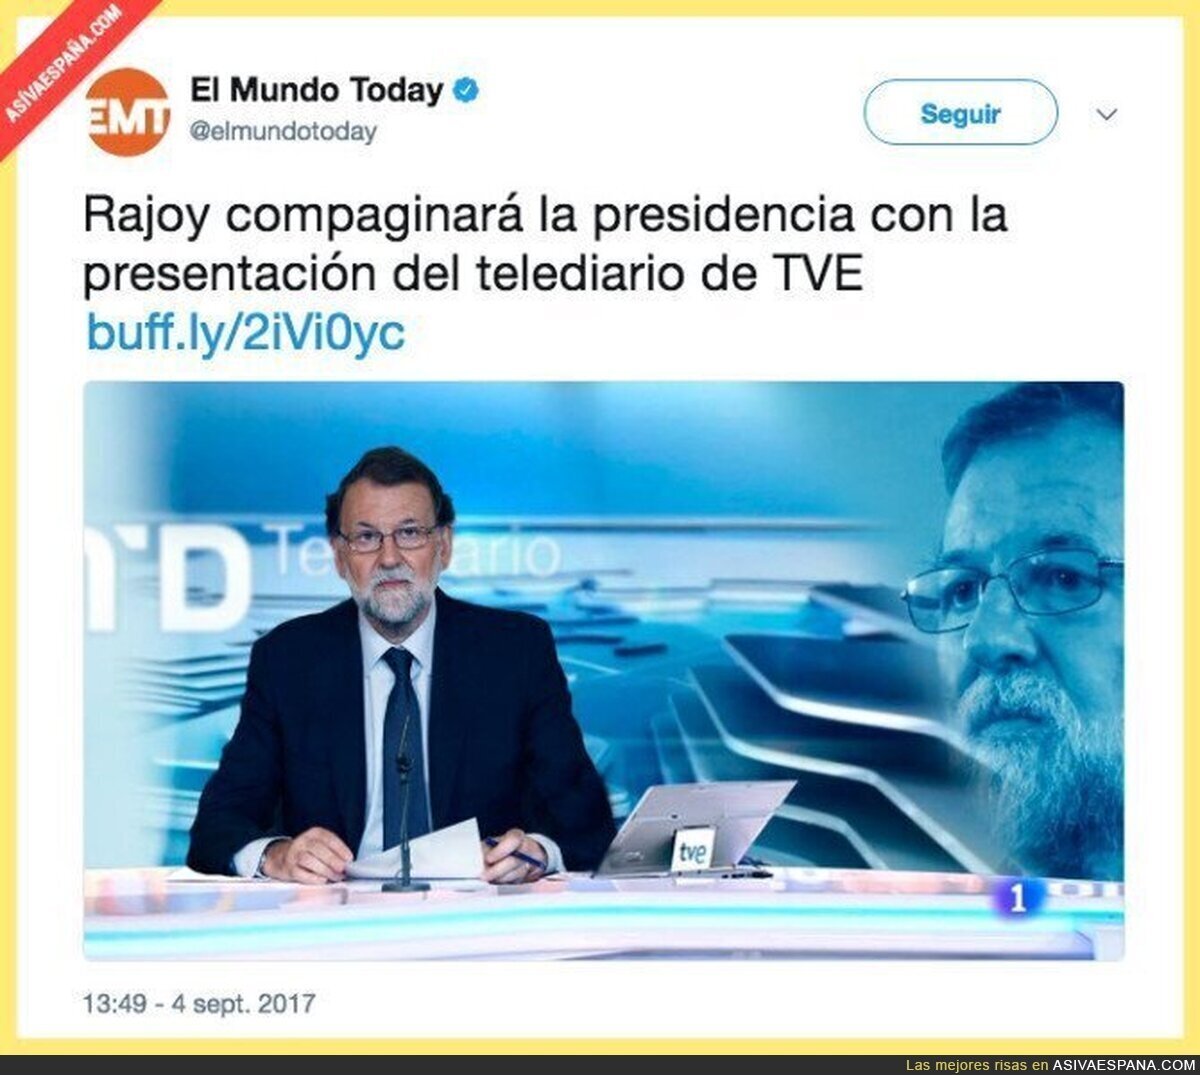 Rajoy pluriempleado a partir de este mes